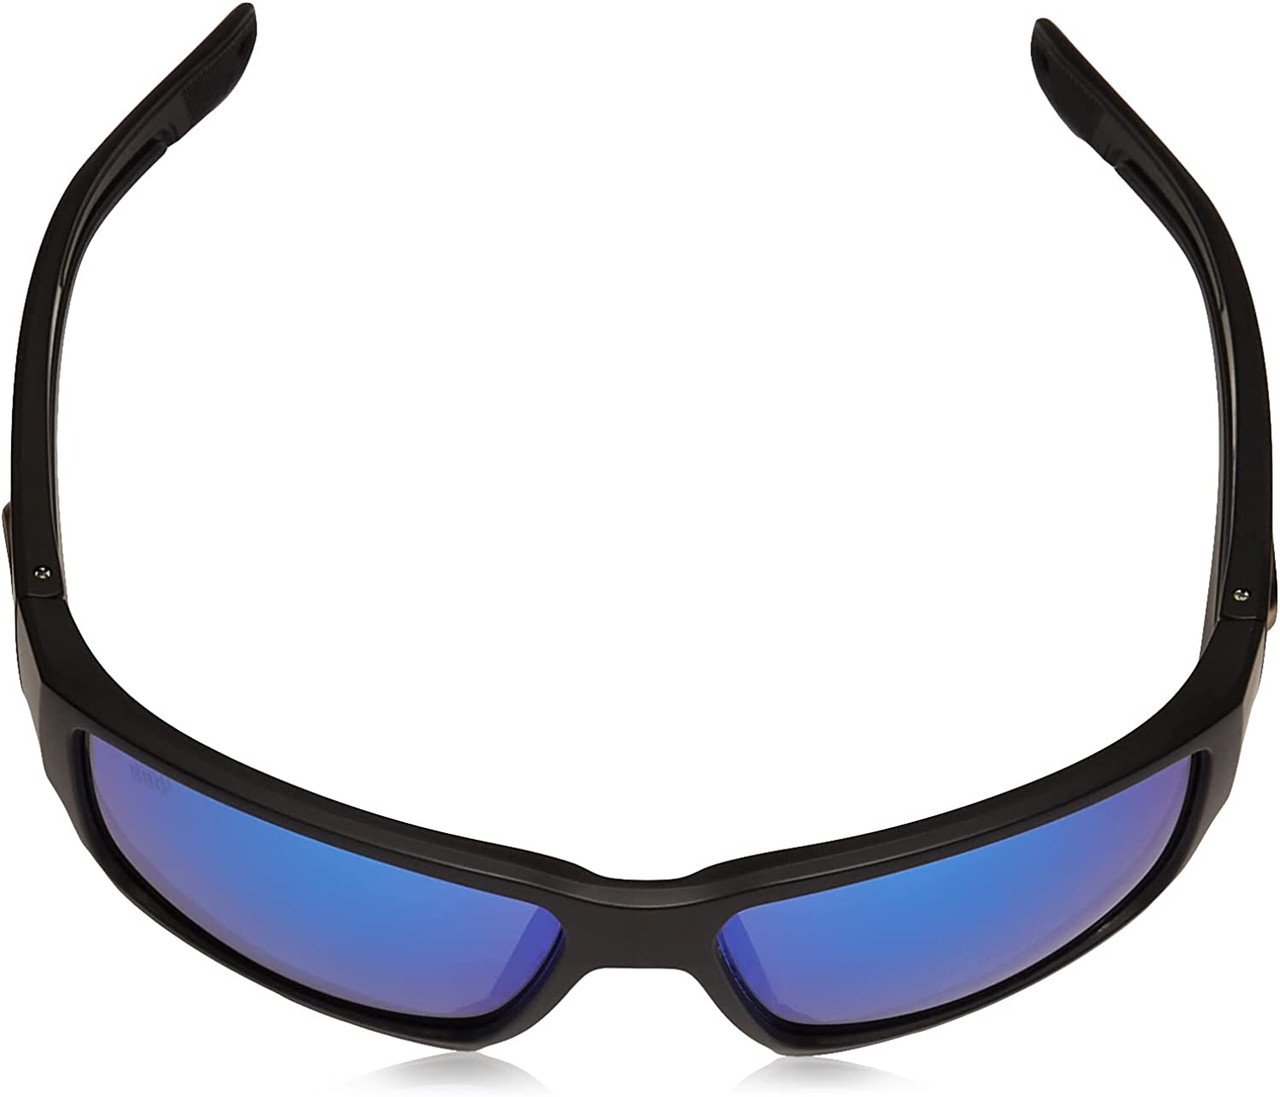 Costa Del Mar Blackfin Pro Sunglasses Black Blue Mirror 580G